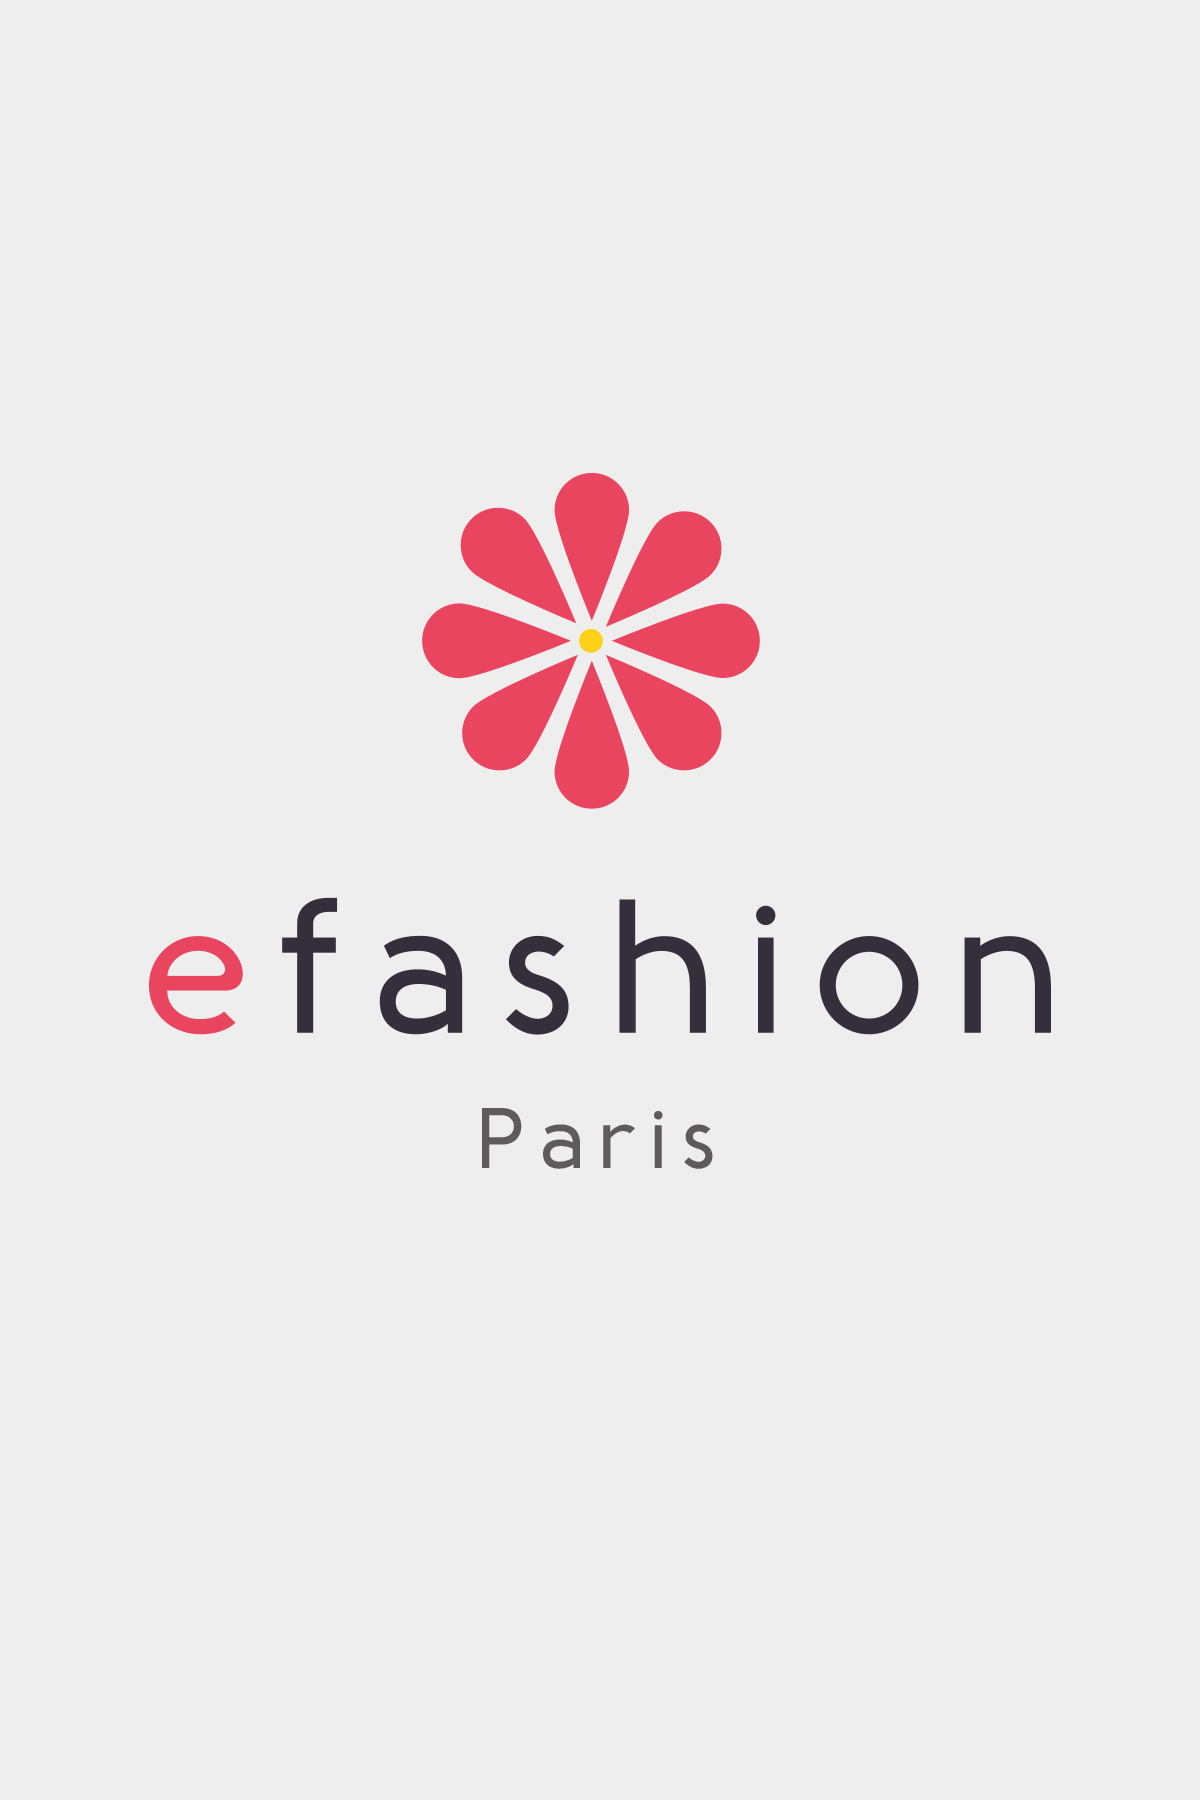 Sneakers Scarpe White SHIPFEES #c Efashion Paris